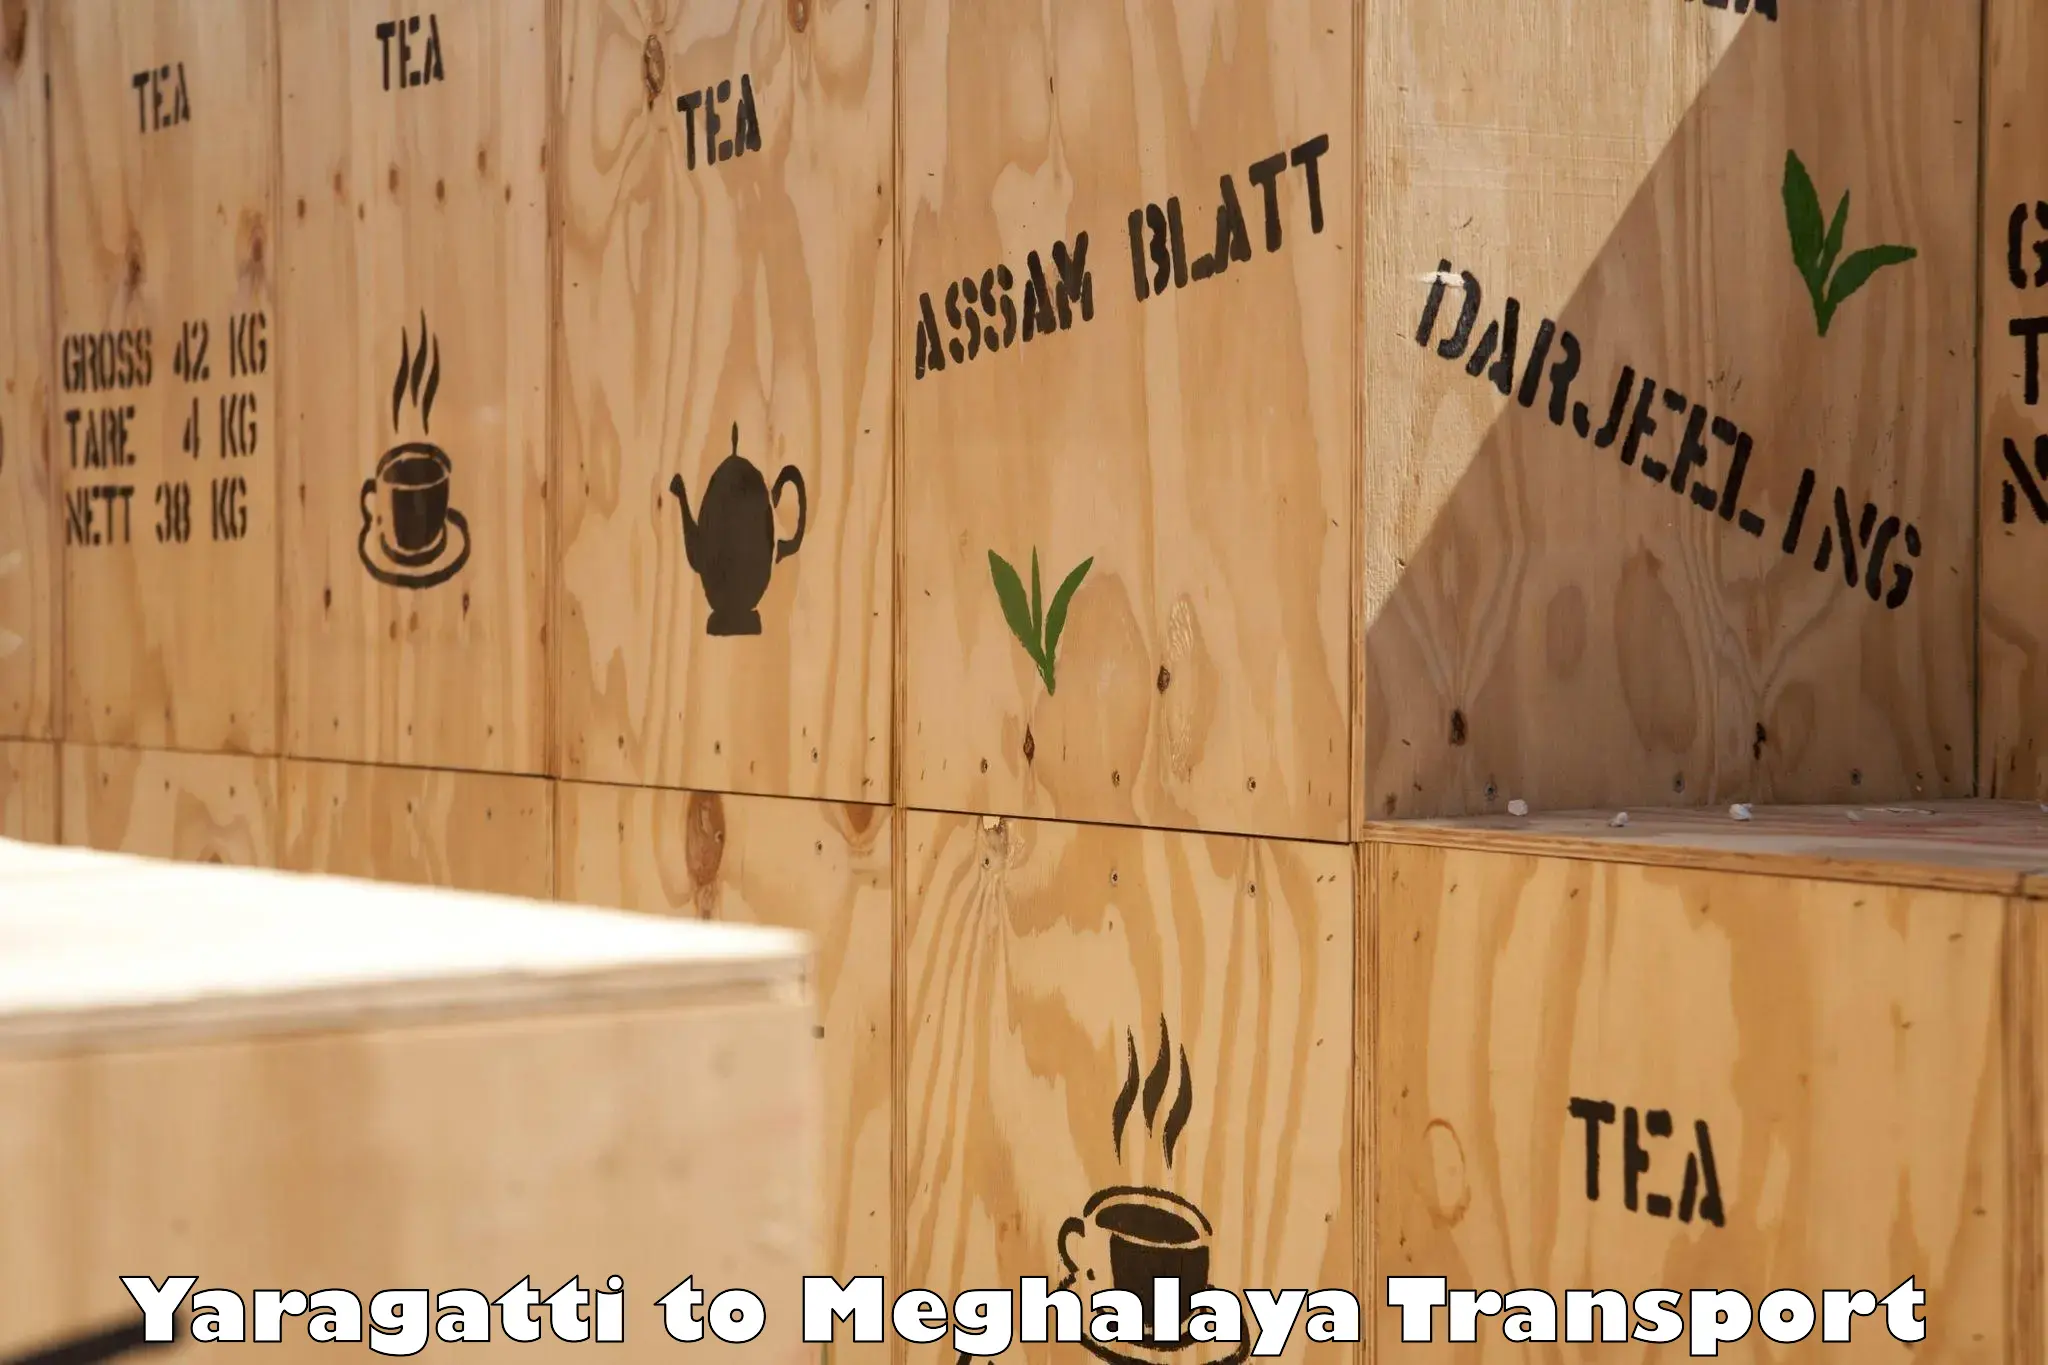 Truck transport companies in India Yaragatti to Meghalaya